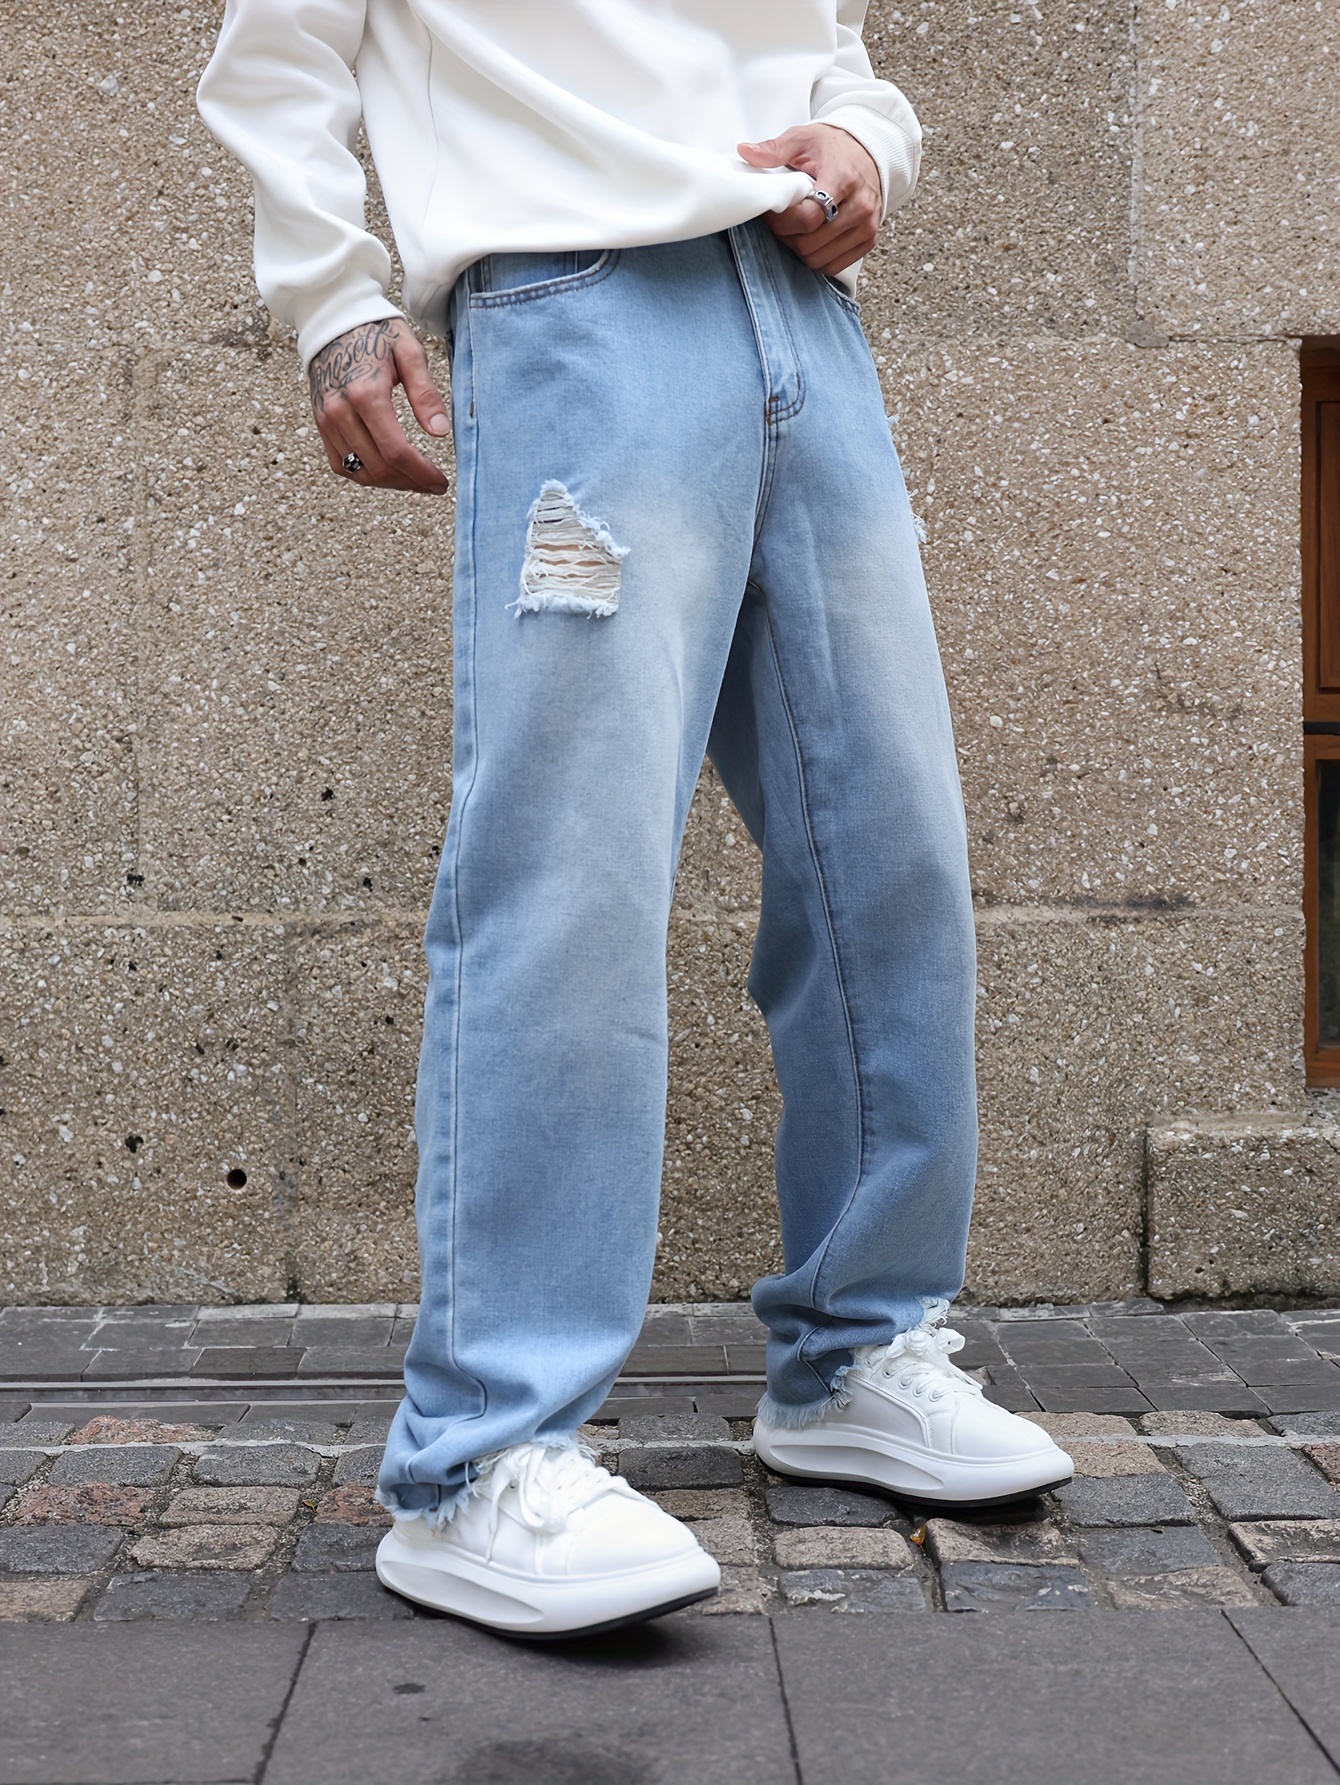 Tendencia: pantalones anchos  Fashion, Style, Street style